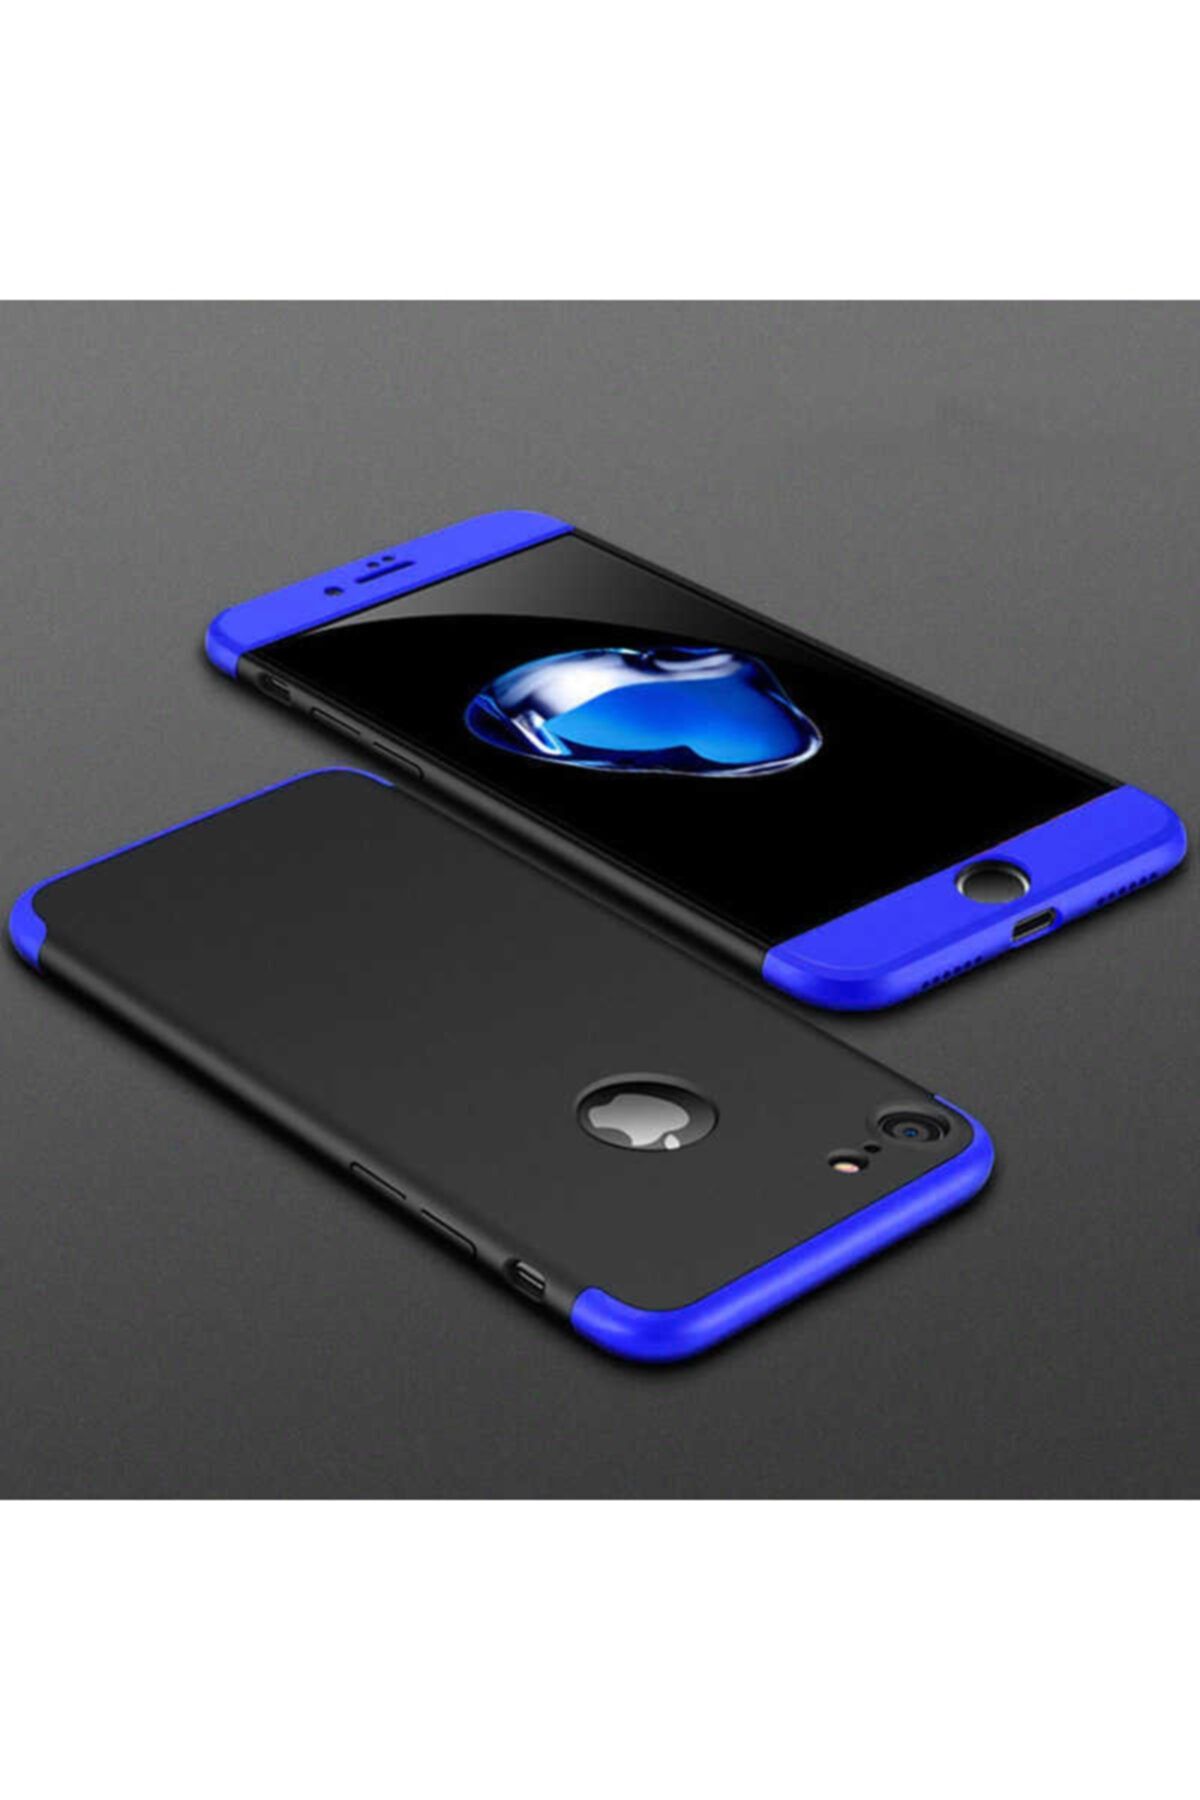 Apple Iphone 6s Plus Kılıf 360 Derece Tam Koruma 3 Parça Ays Model